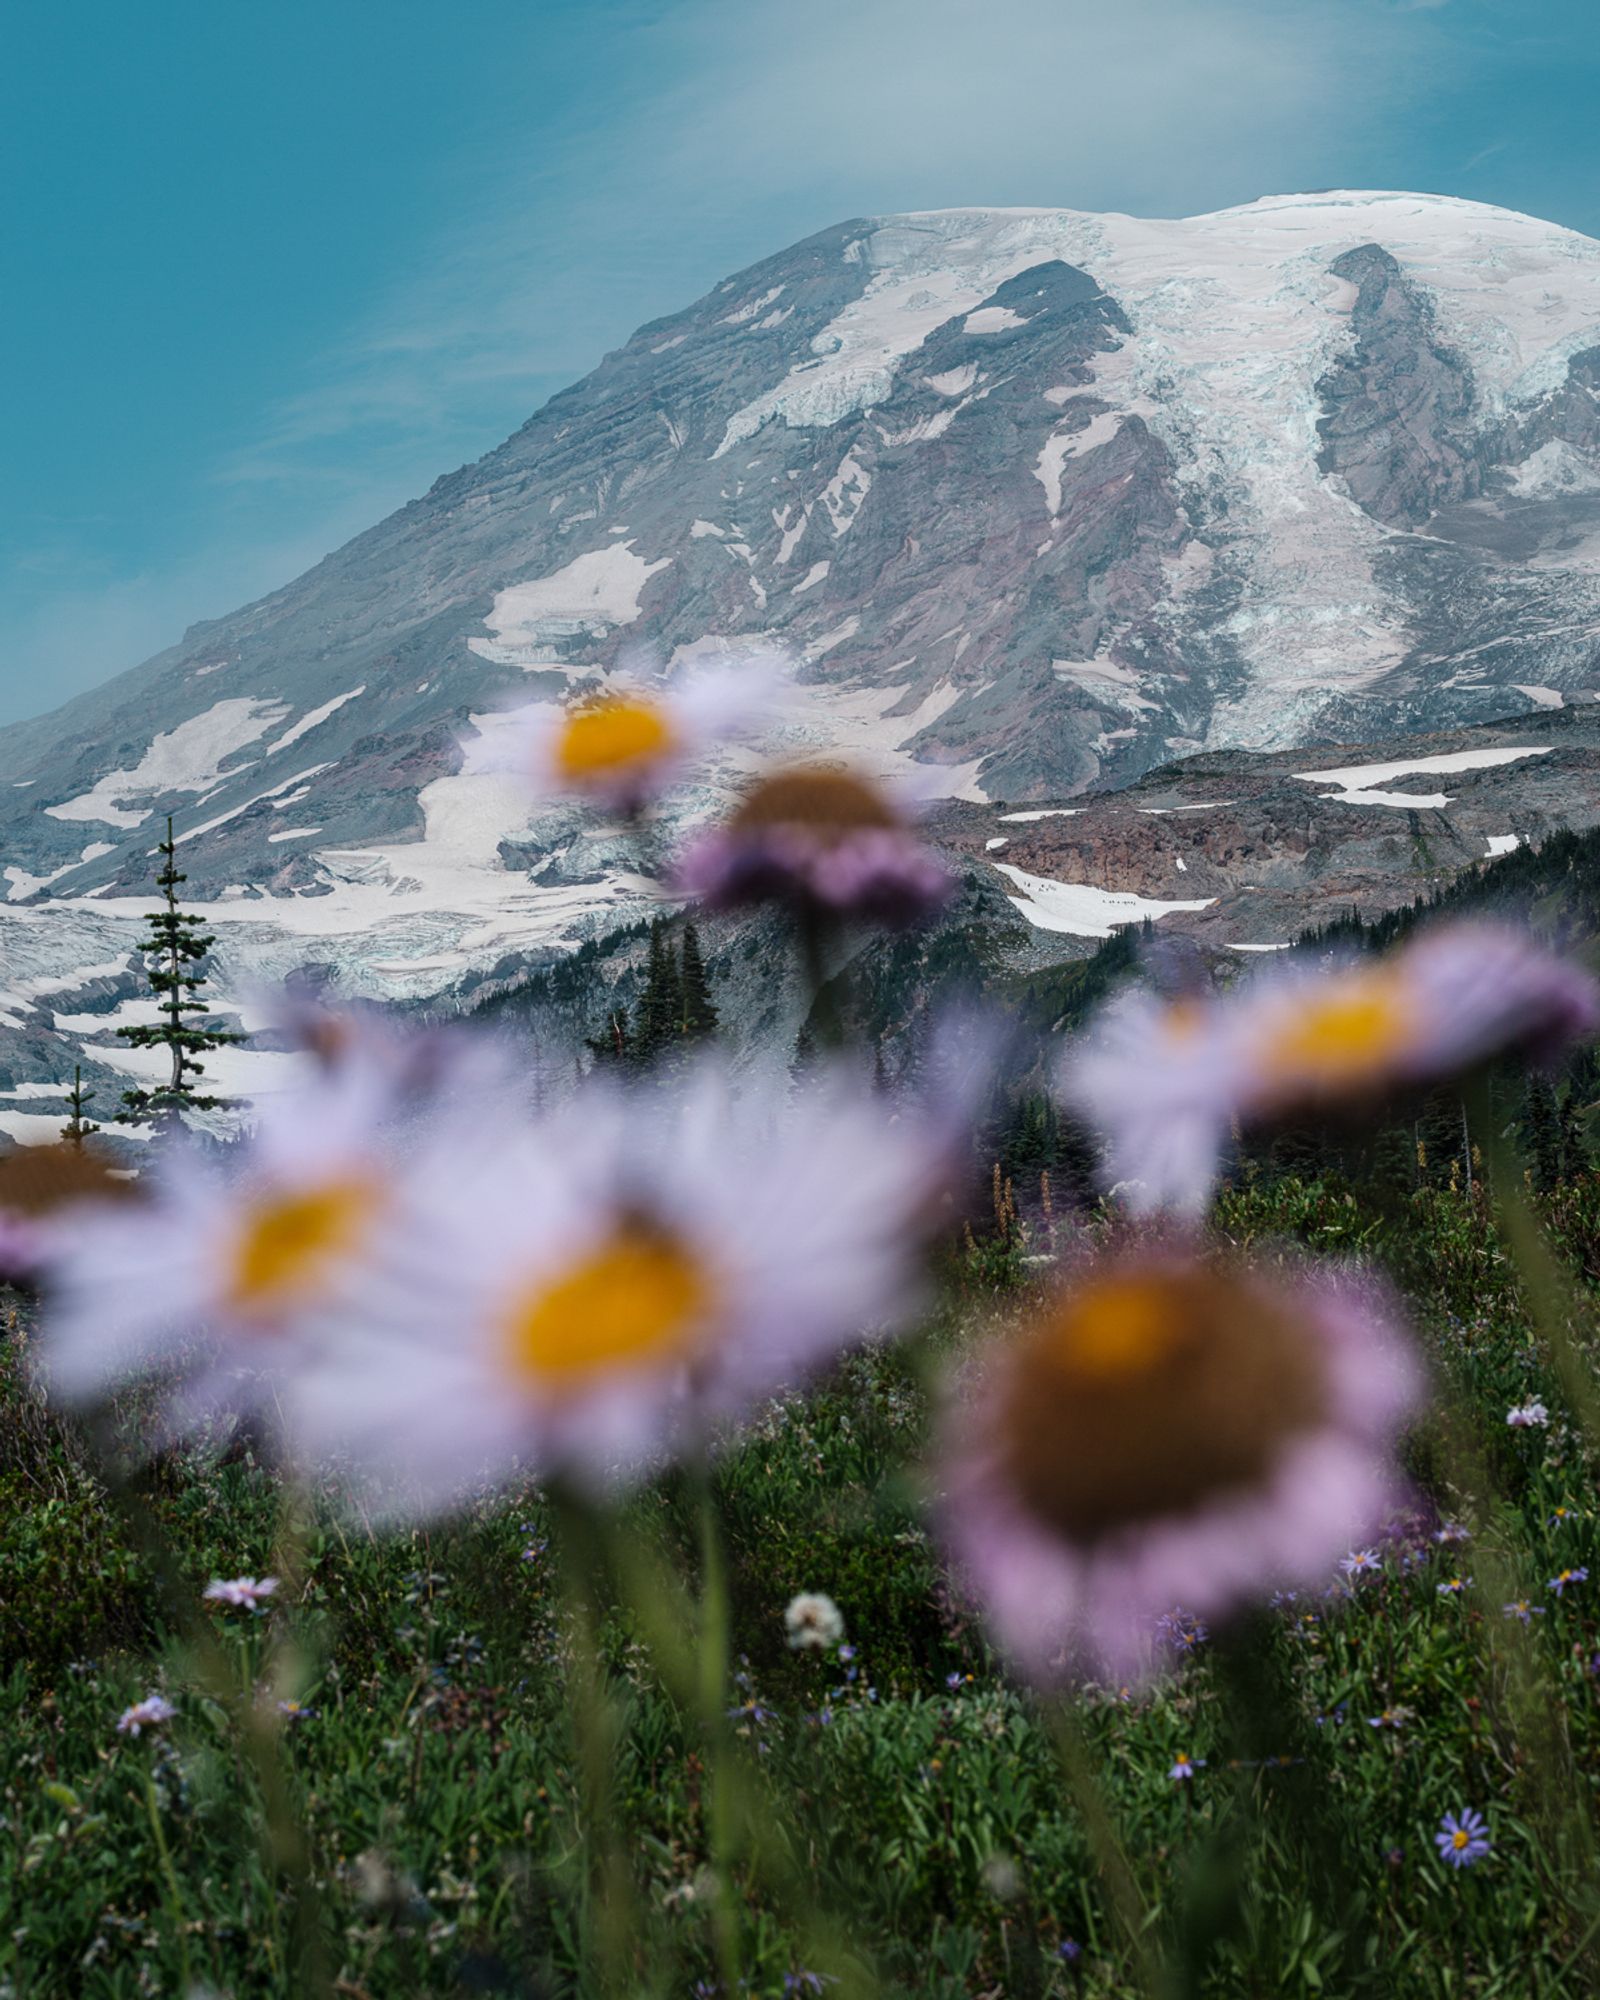 © Alana Celii - Subalpine daisies along Panorama trail near Paradise Park on Mount Rainier.